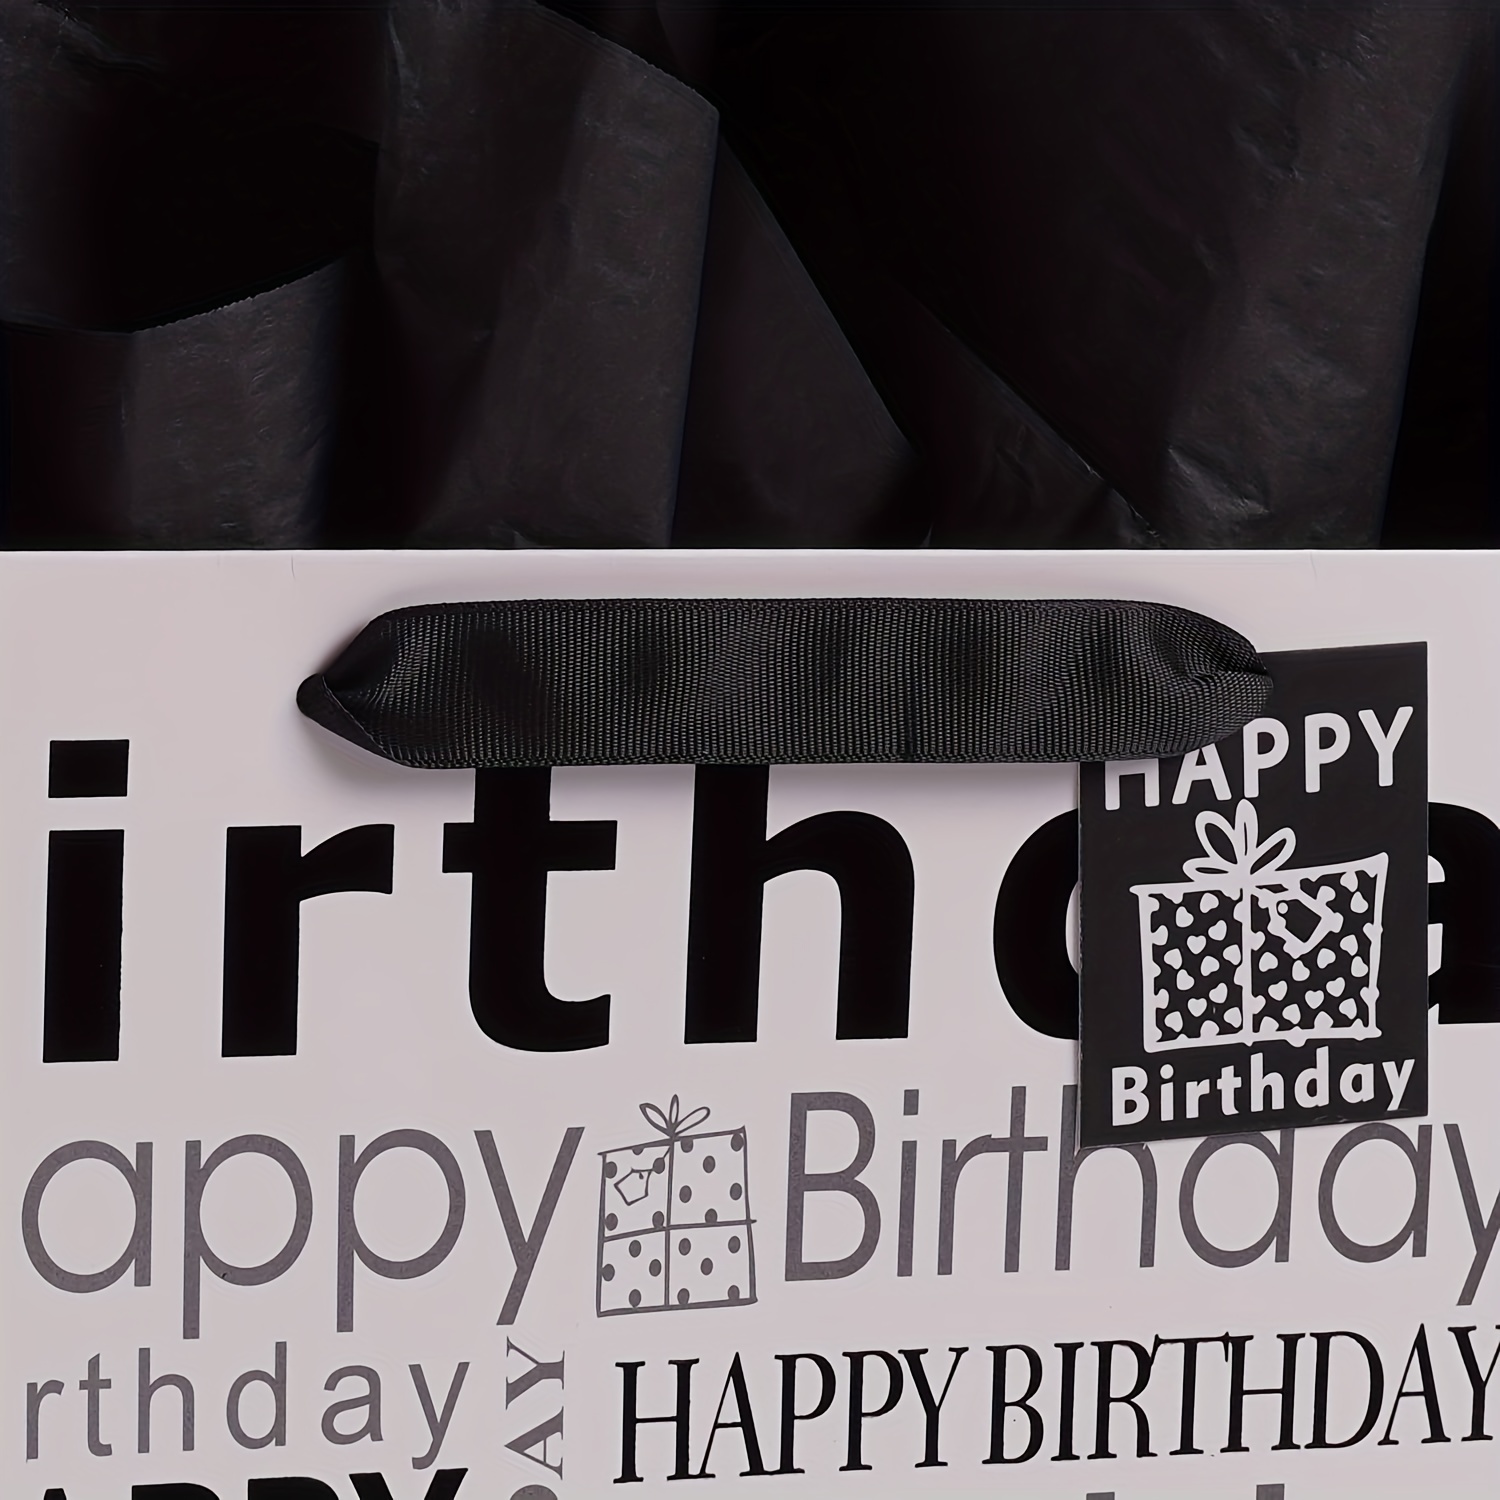 Grande sacchetto regalo bianco e nero con carta velina, sacchetto regalo di  buon compleanno per uomini donne compleanno - 12,6 x 10,25 x 4,7 